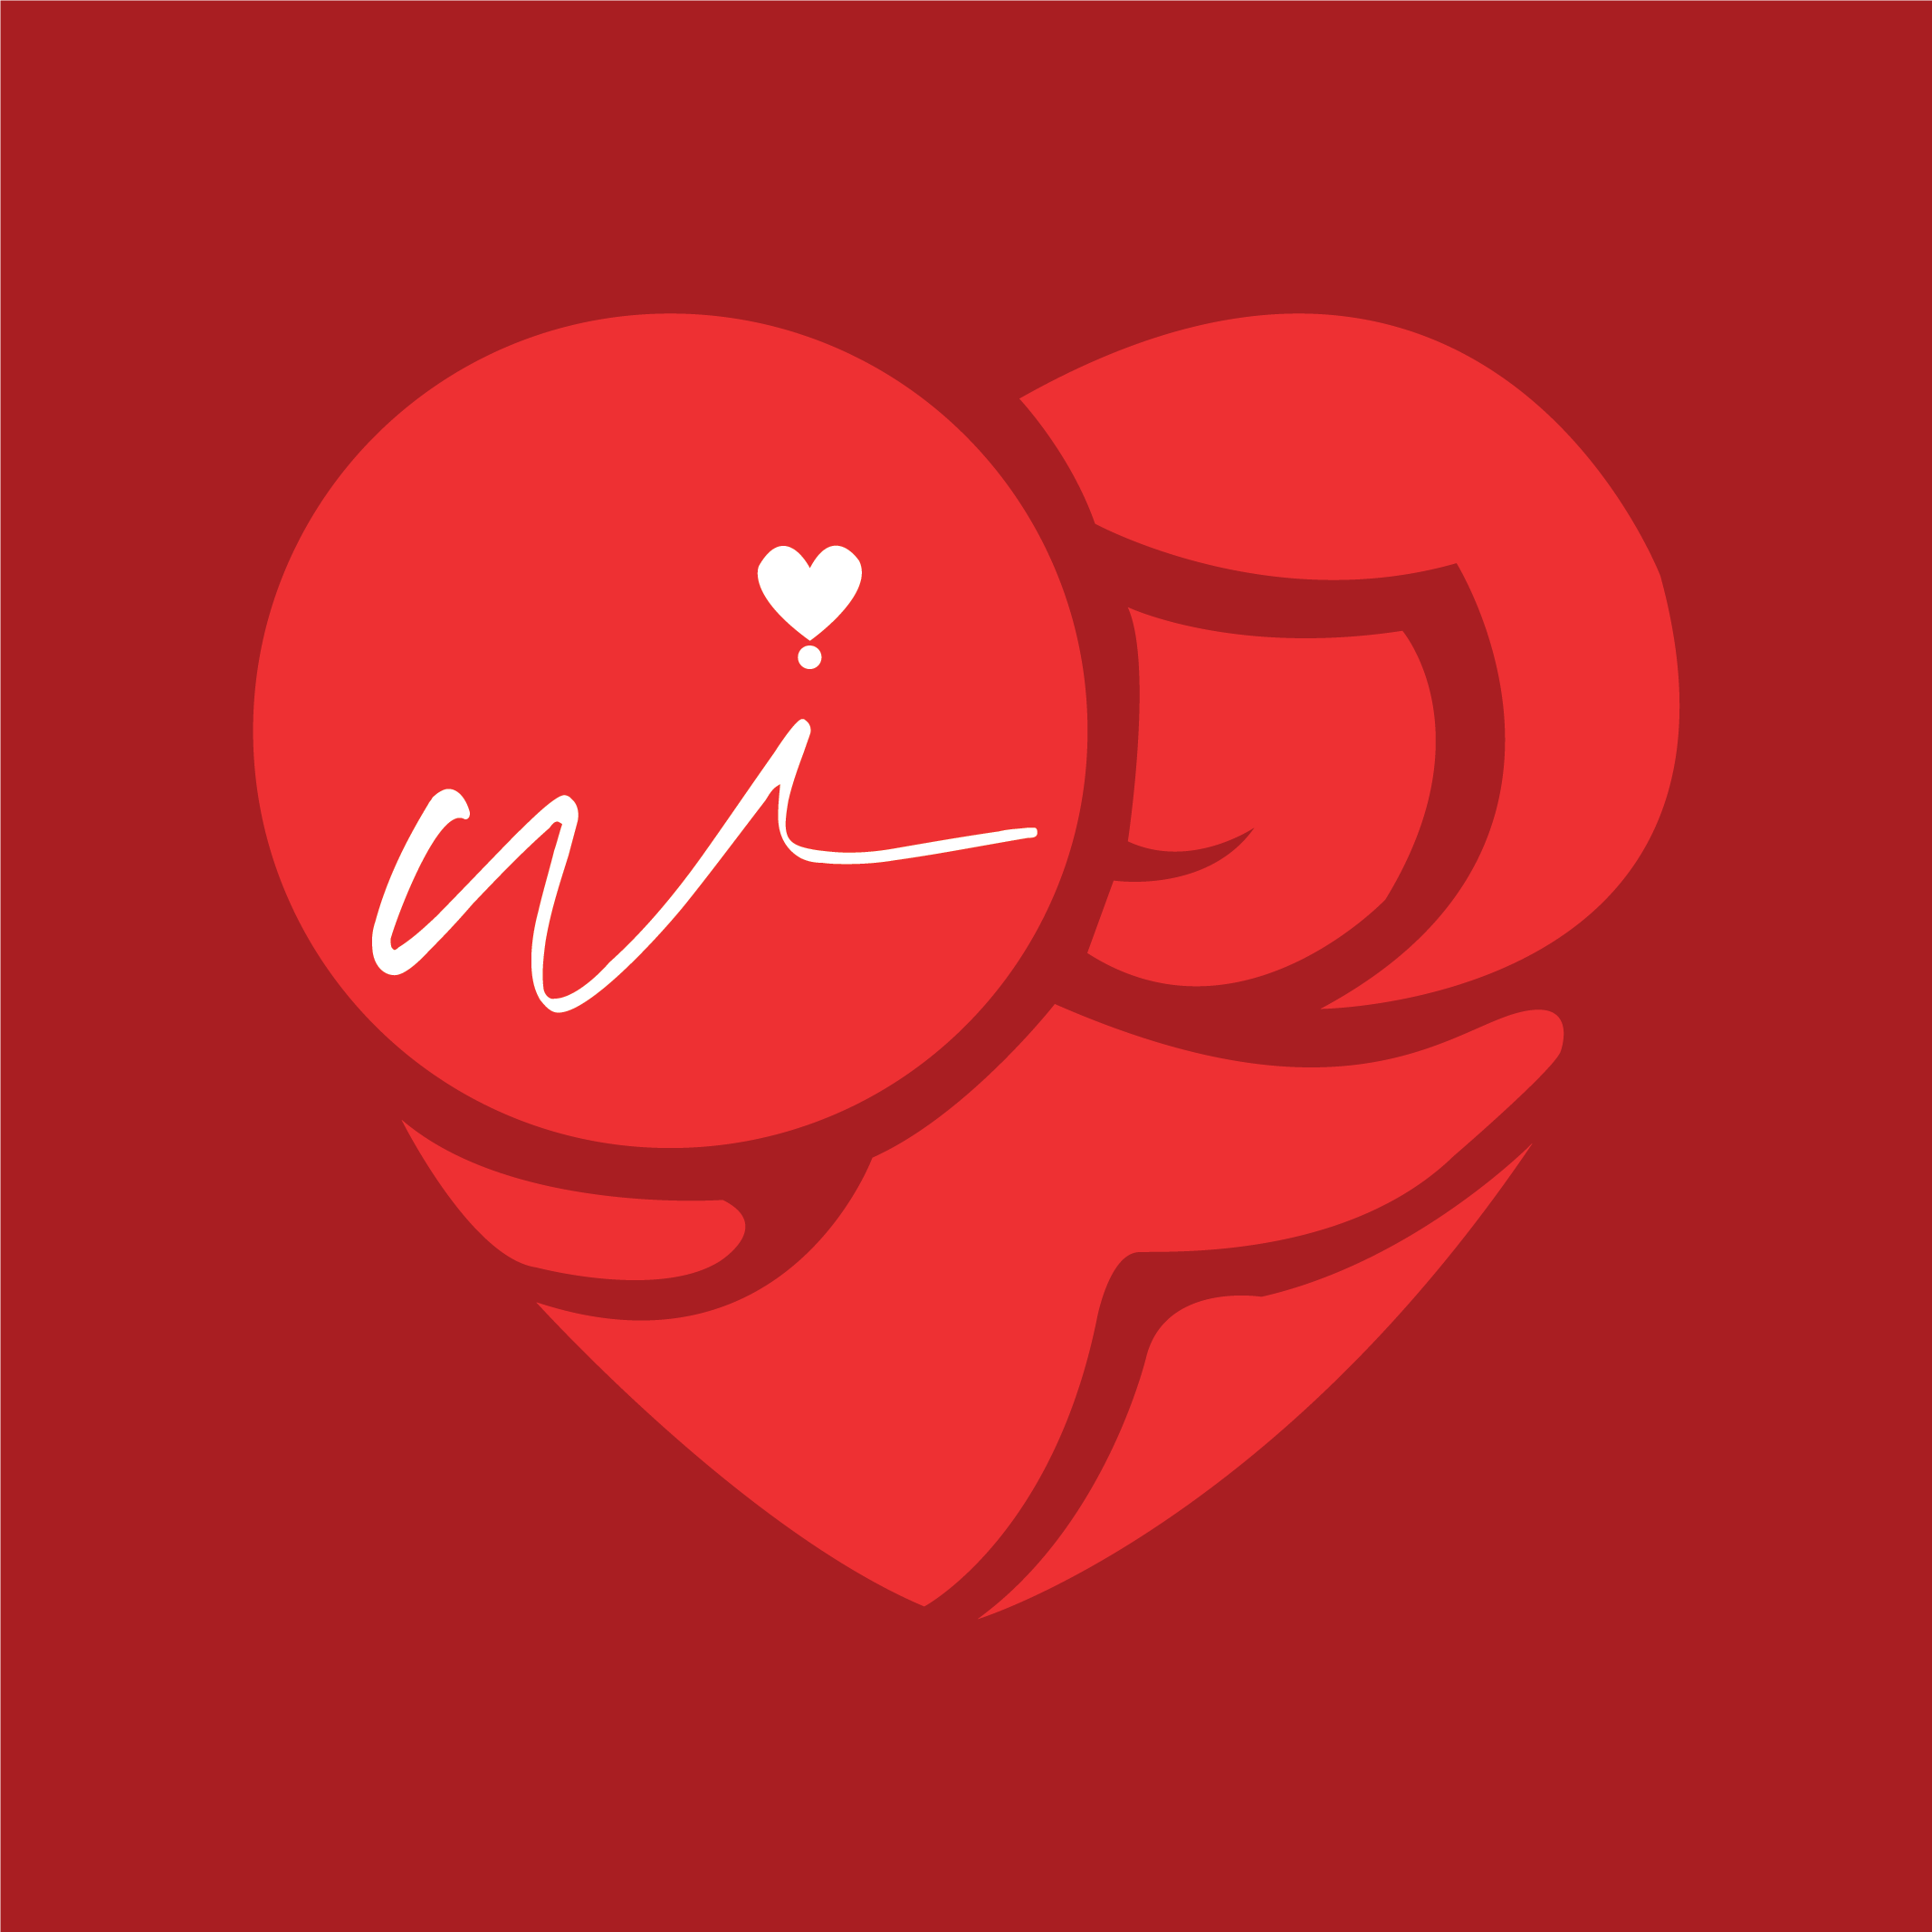 WiKiss - Find True love